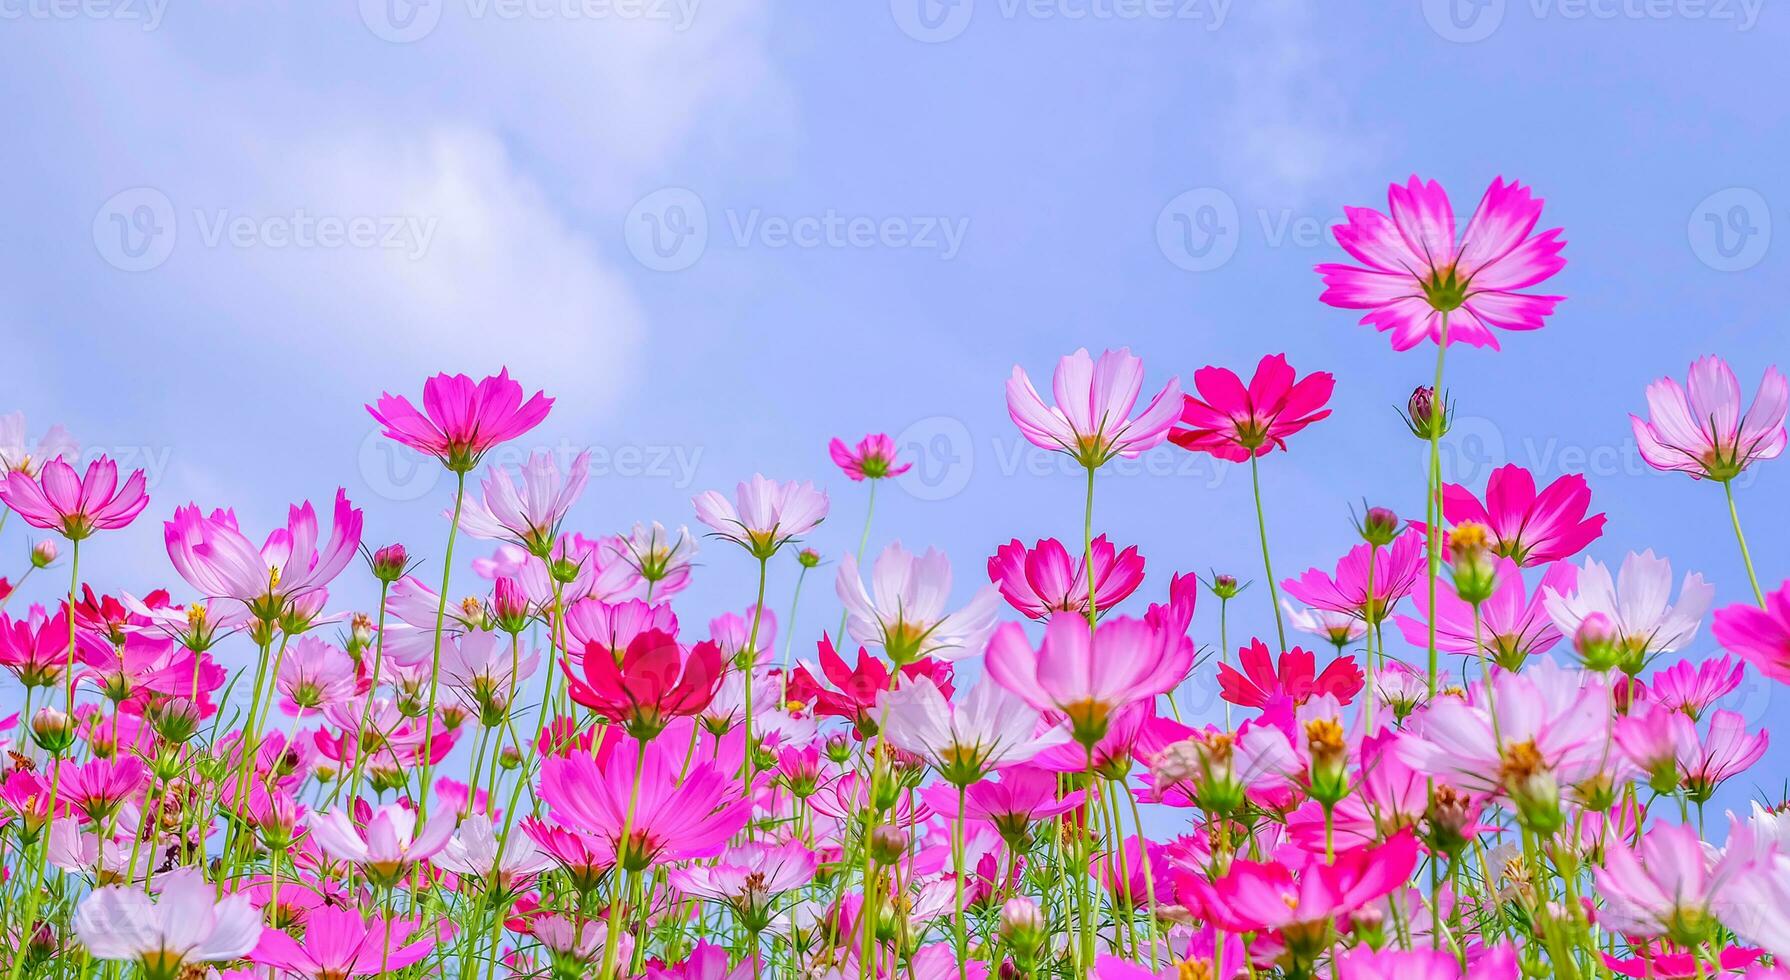 vista de ângulo baixo de plantas com flores cosmos rosa contra o céu azul foto